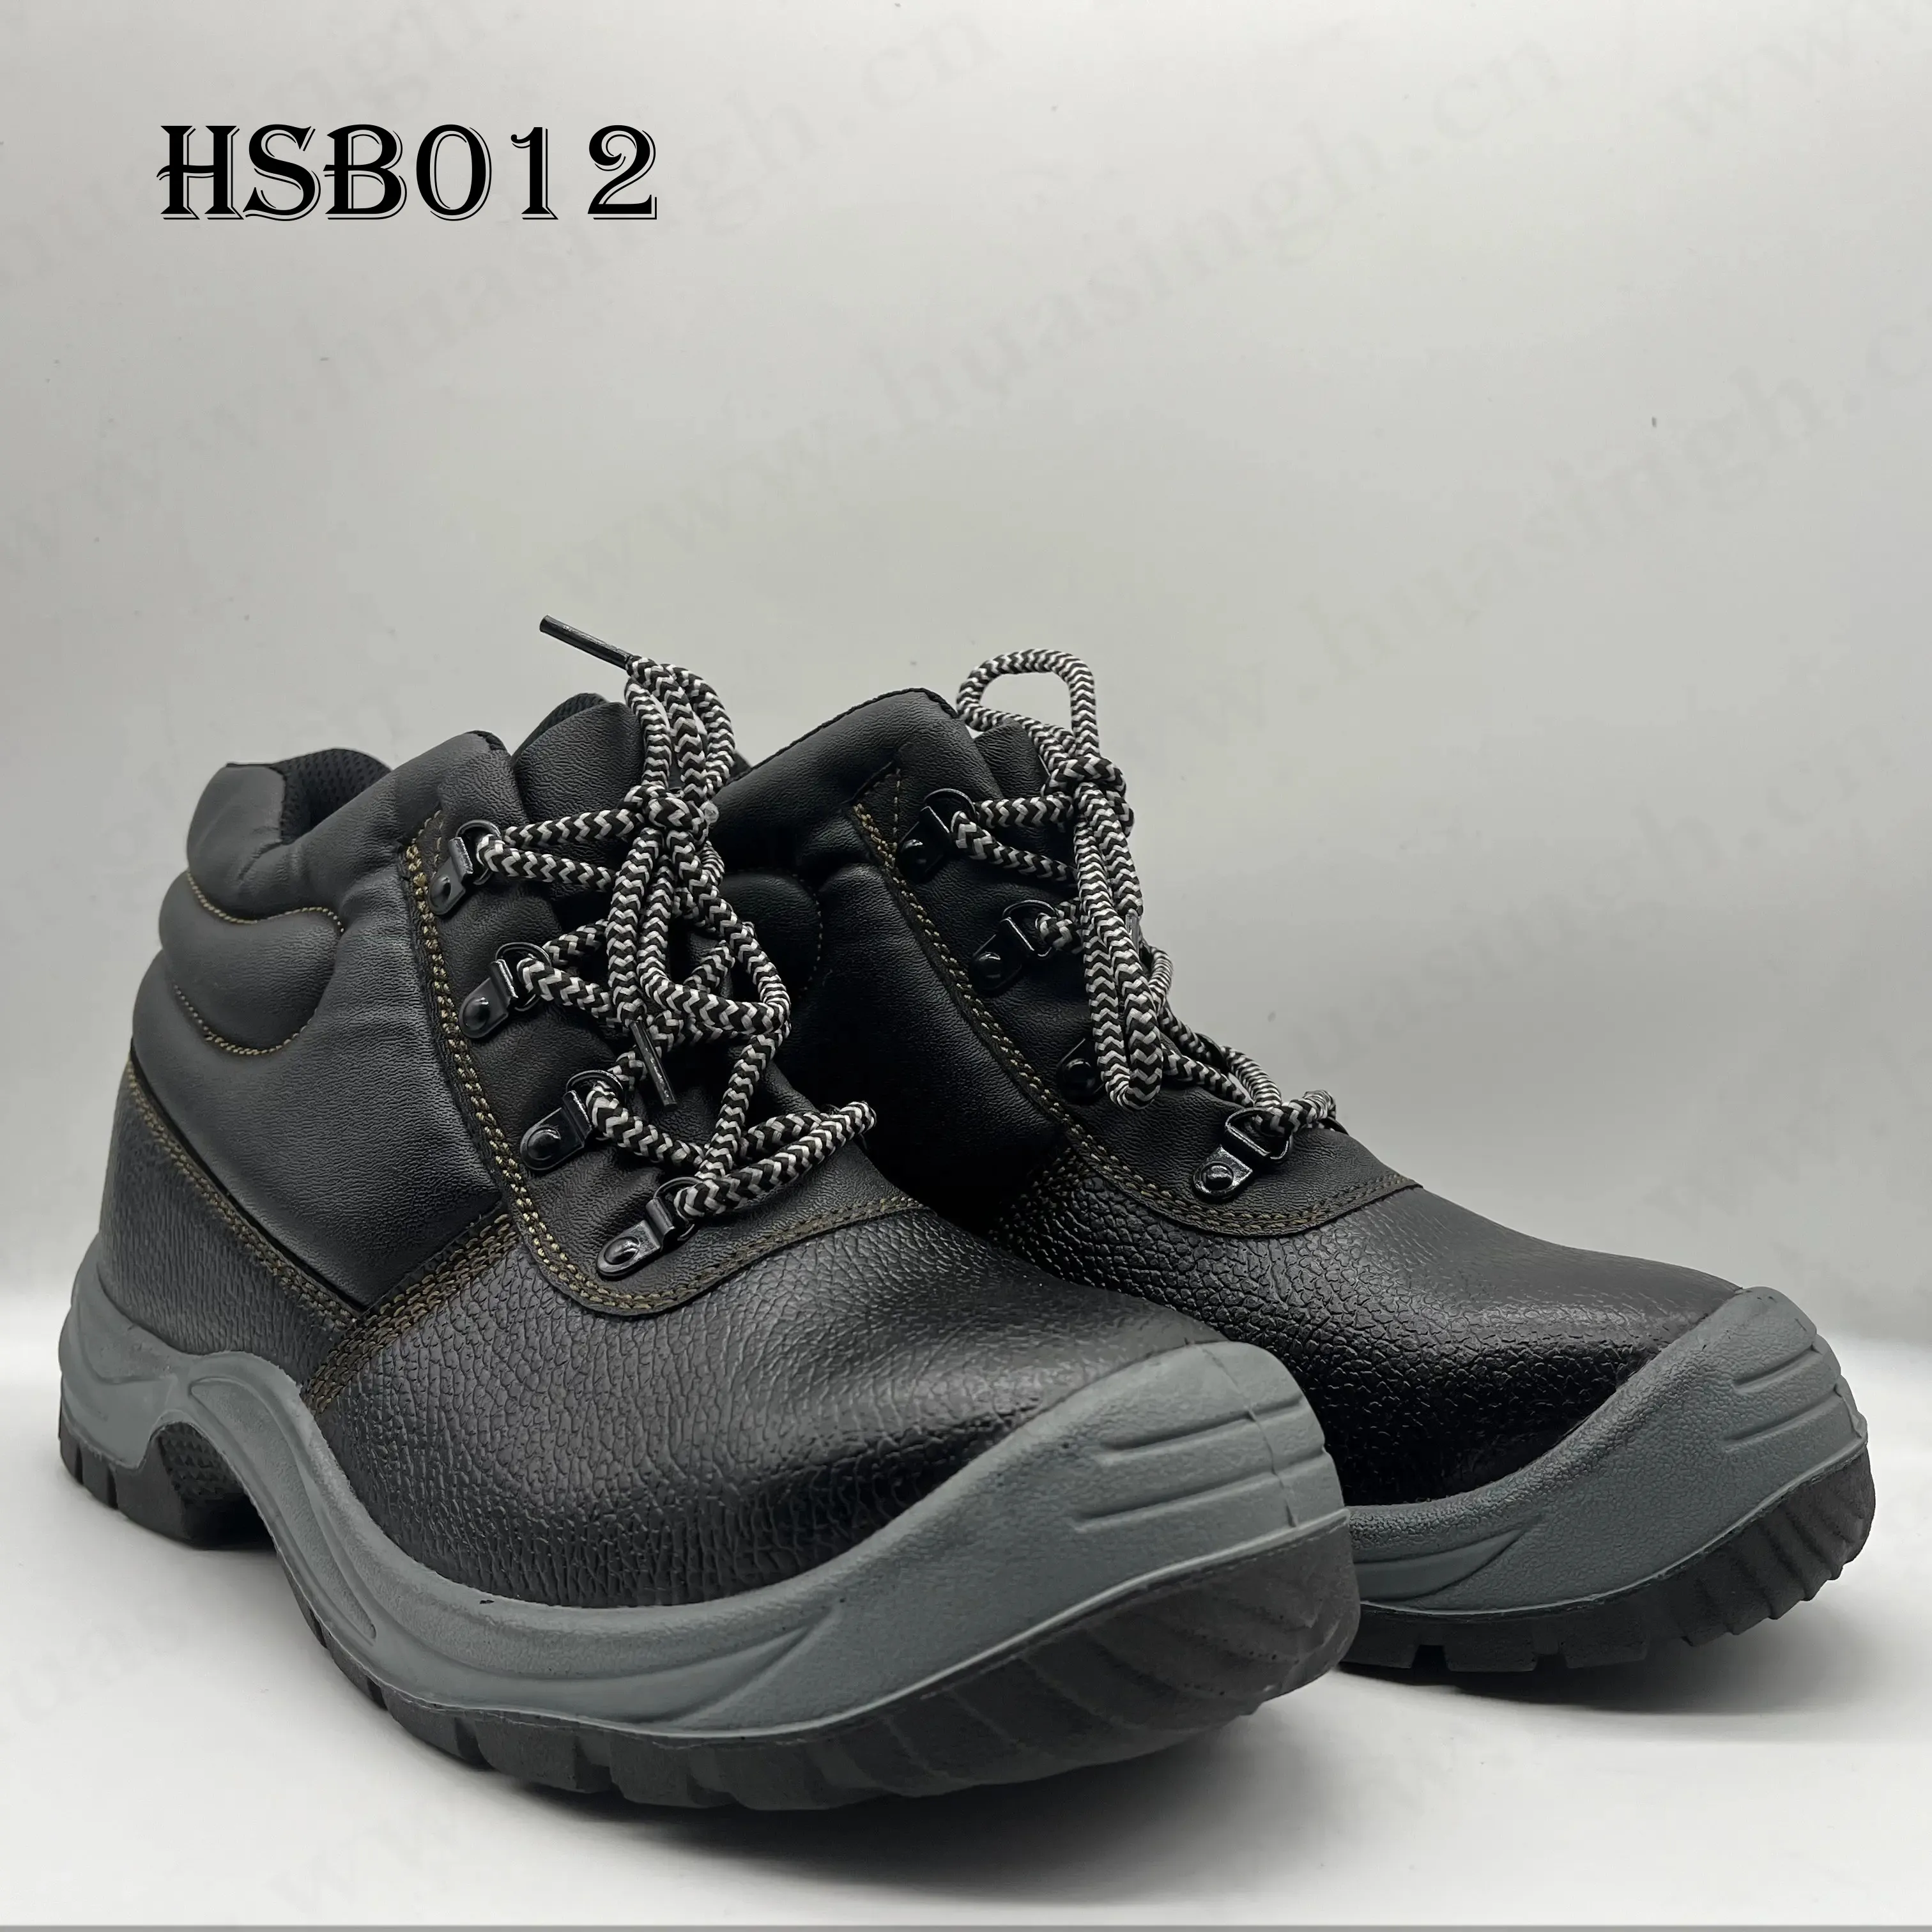 YWQ, कतर बाजार में लोकप्रिय मिड-कट मजबूत पकड़ पीयू/पीयू इंजेक्शन सुरक्षा जूते सीई अनुमोदित मजबूत श्रम बीमा जूते HSB012